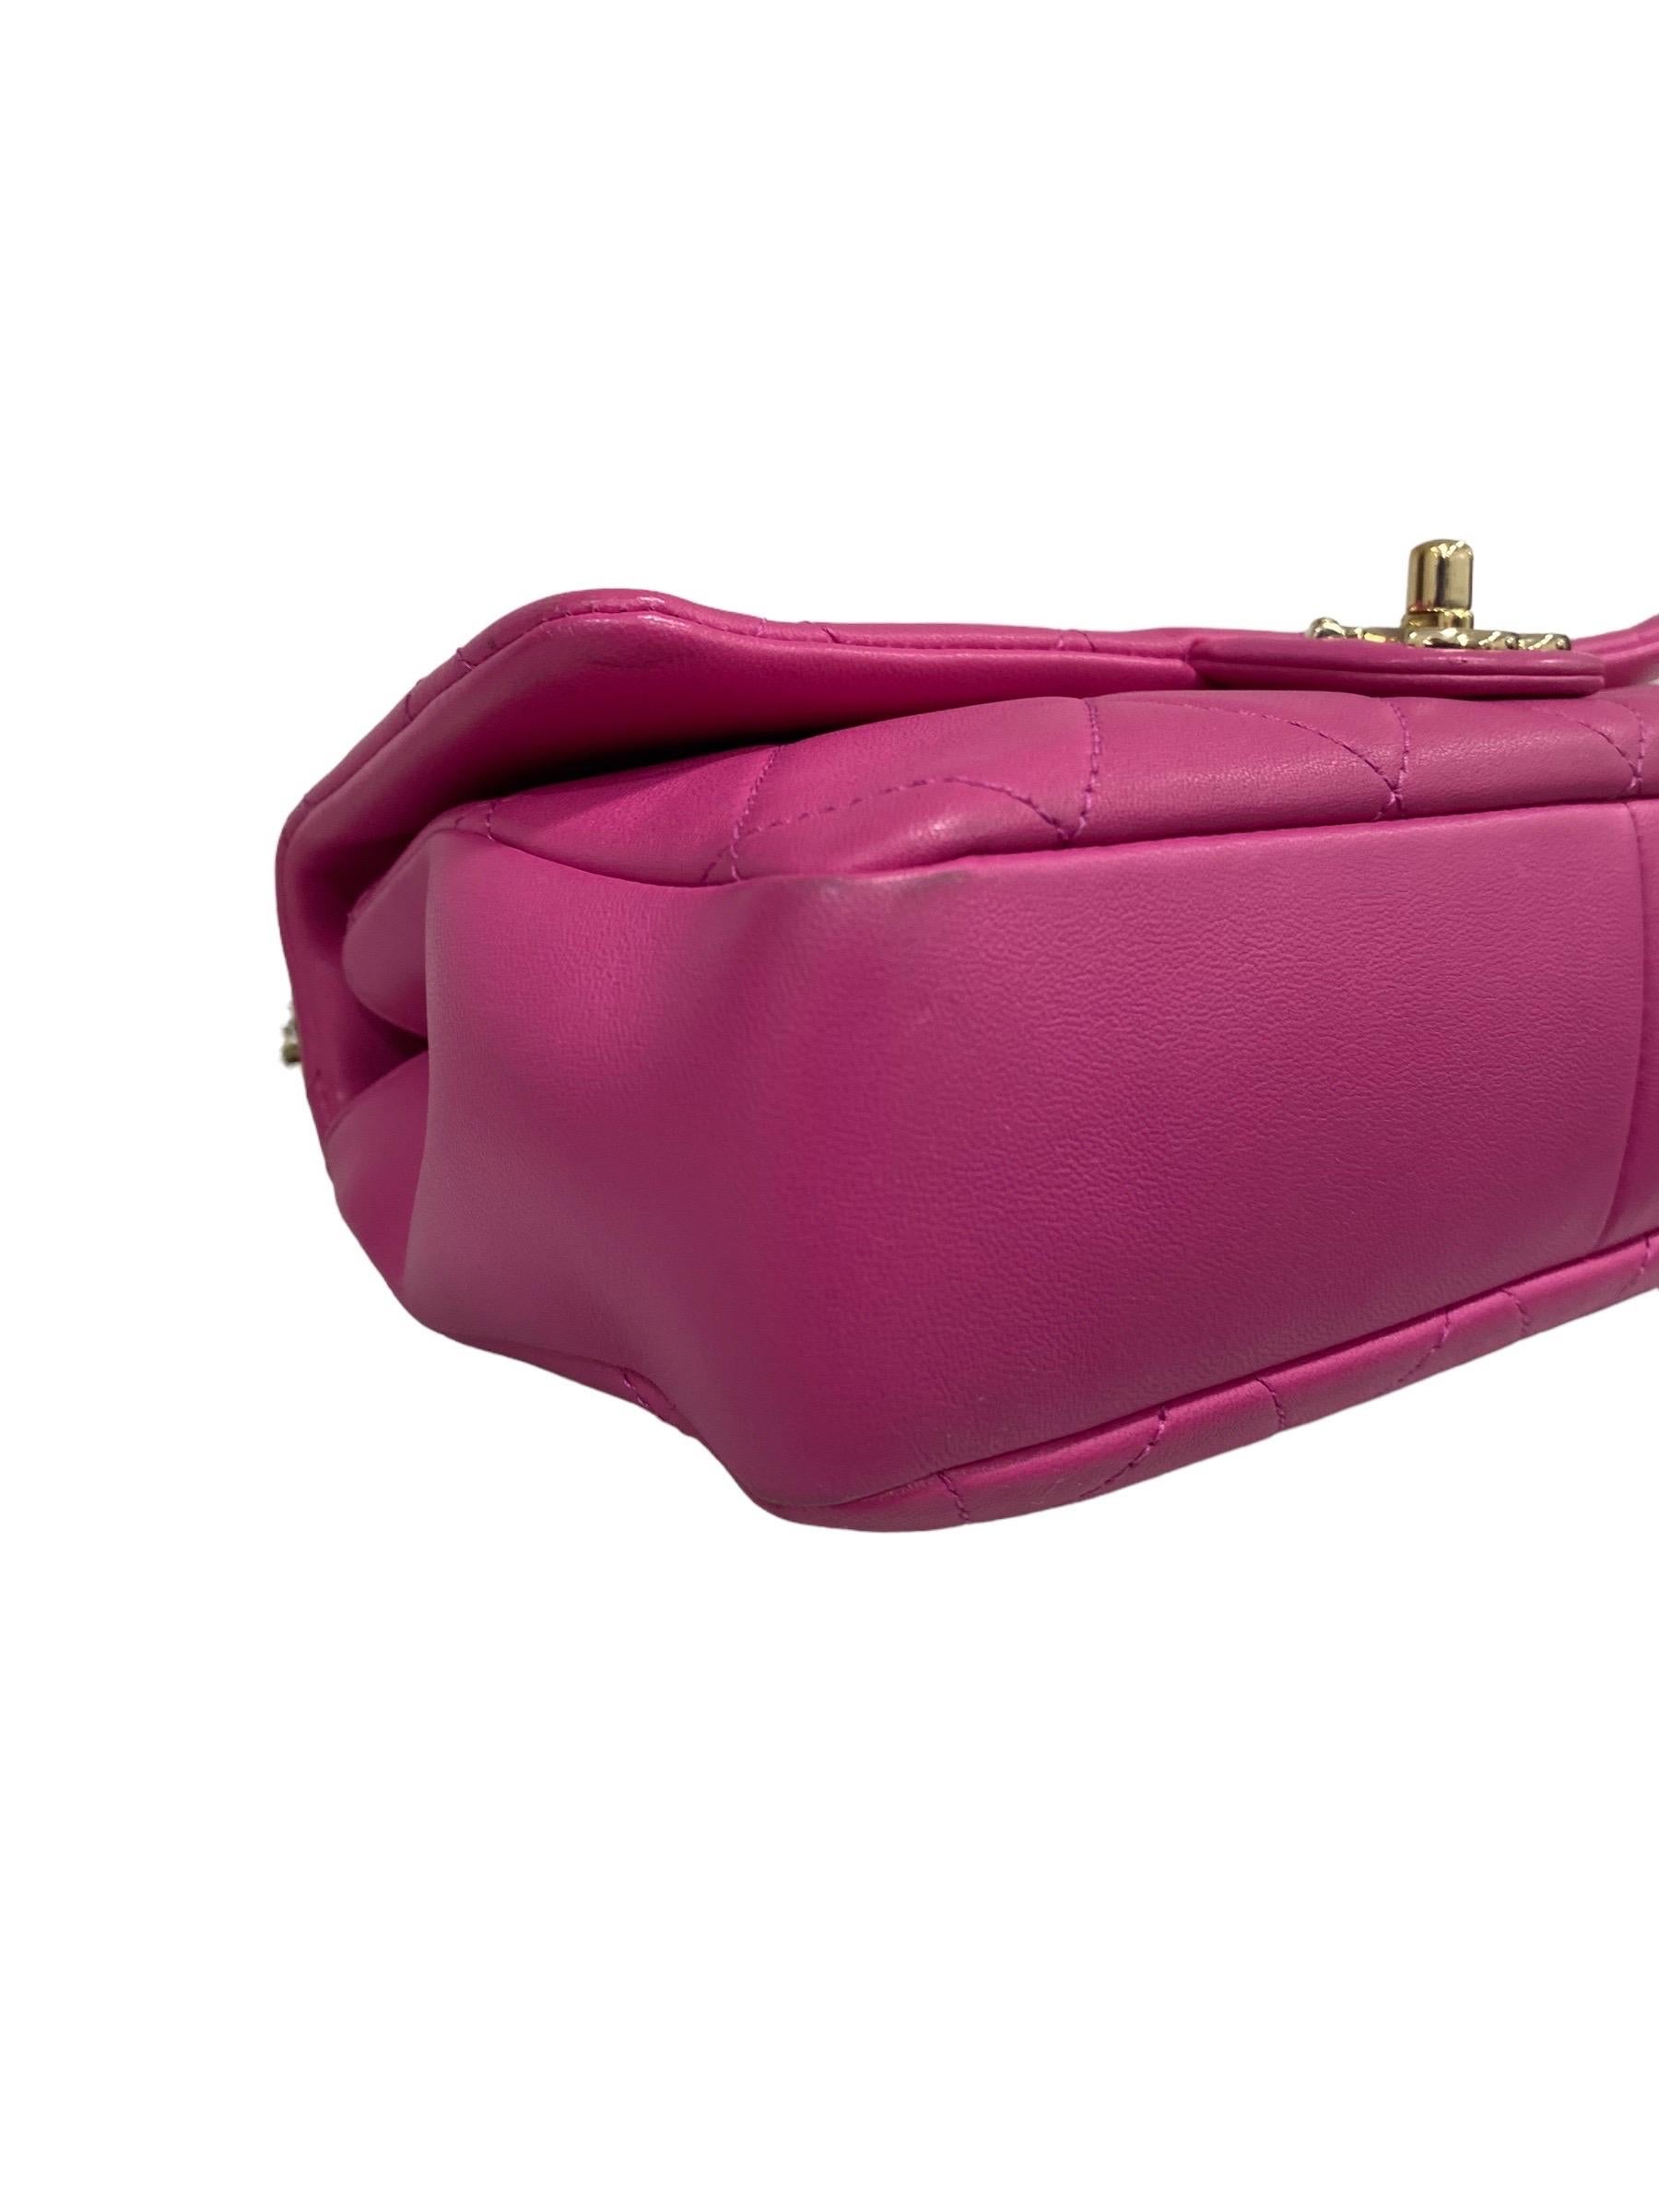 2021 Chanel 19 Pink Shoulder Bag  For Sale 2